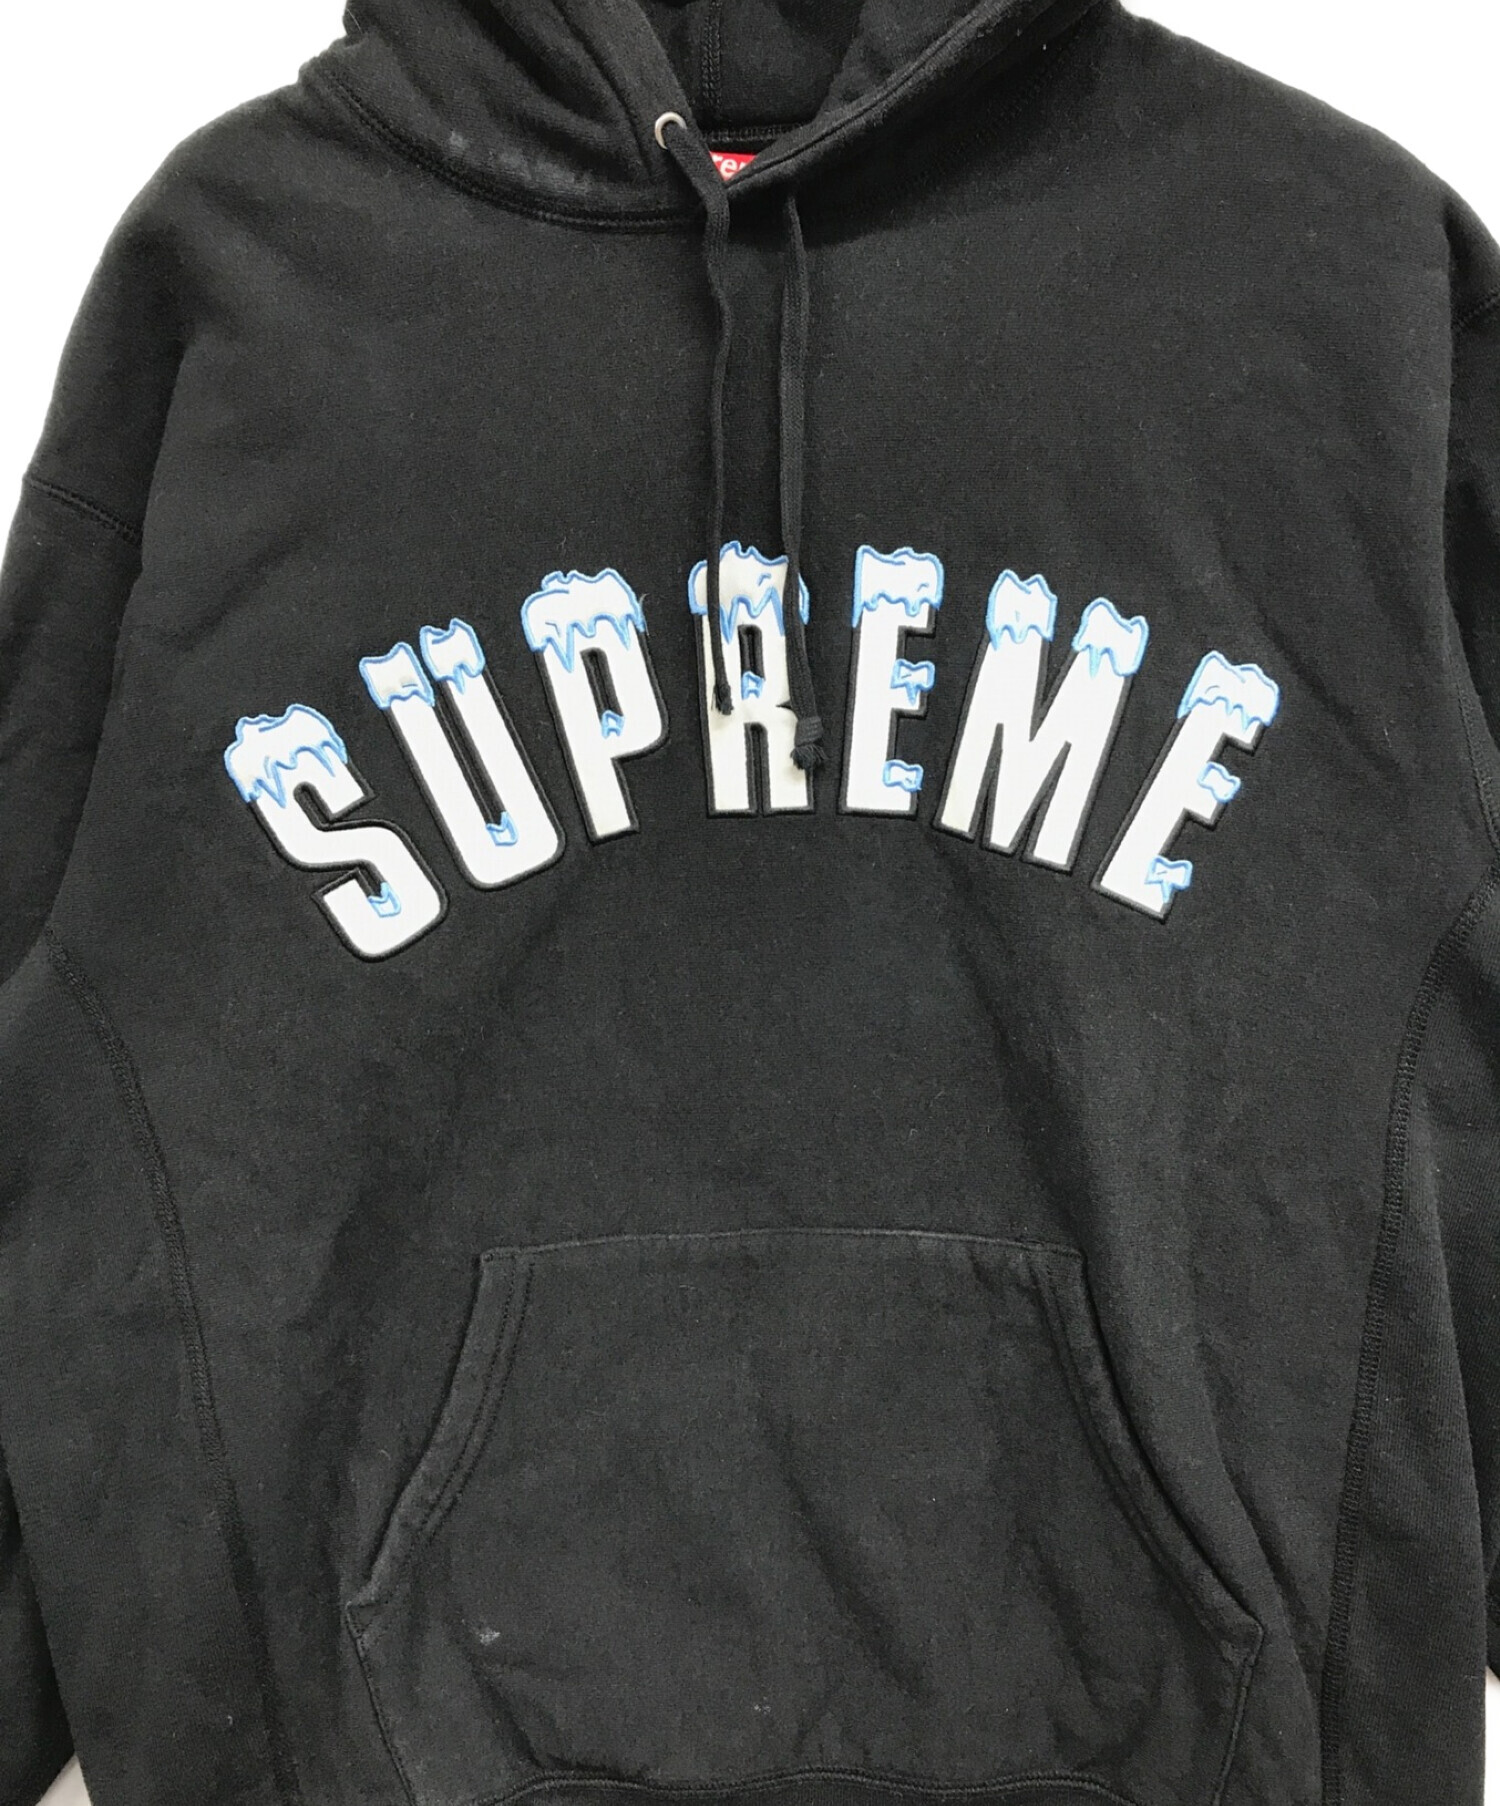 Supreme (シュプリーム) Icy Arc Hooded Sweatshirt ブラック サイズ:L